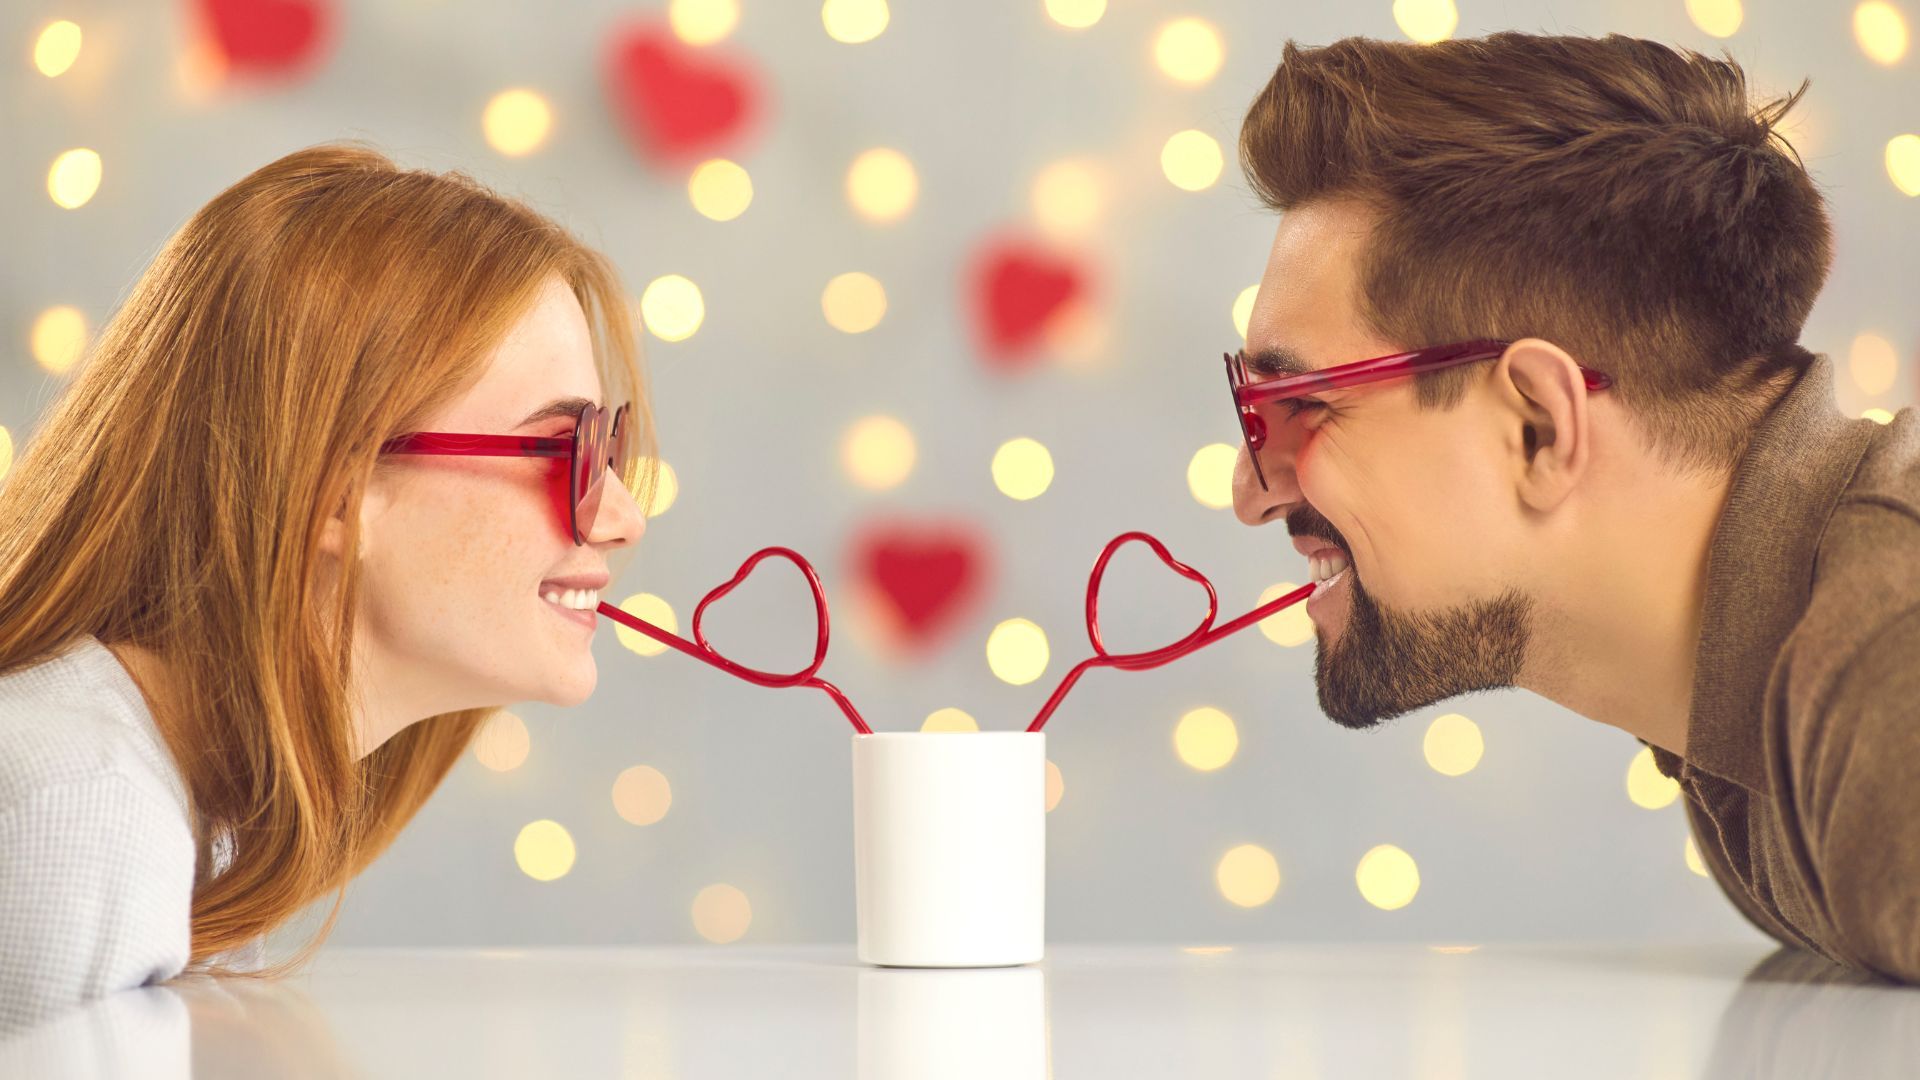 San Valentín día de los enamorados. pareja sonriente mientras sorben de una misma taza con pajitas en forma de corazón